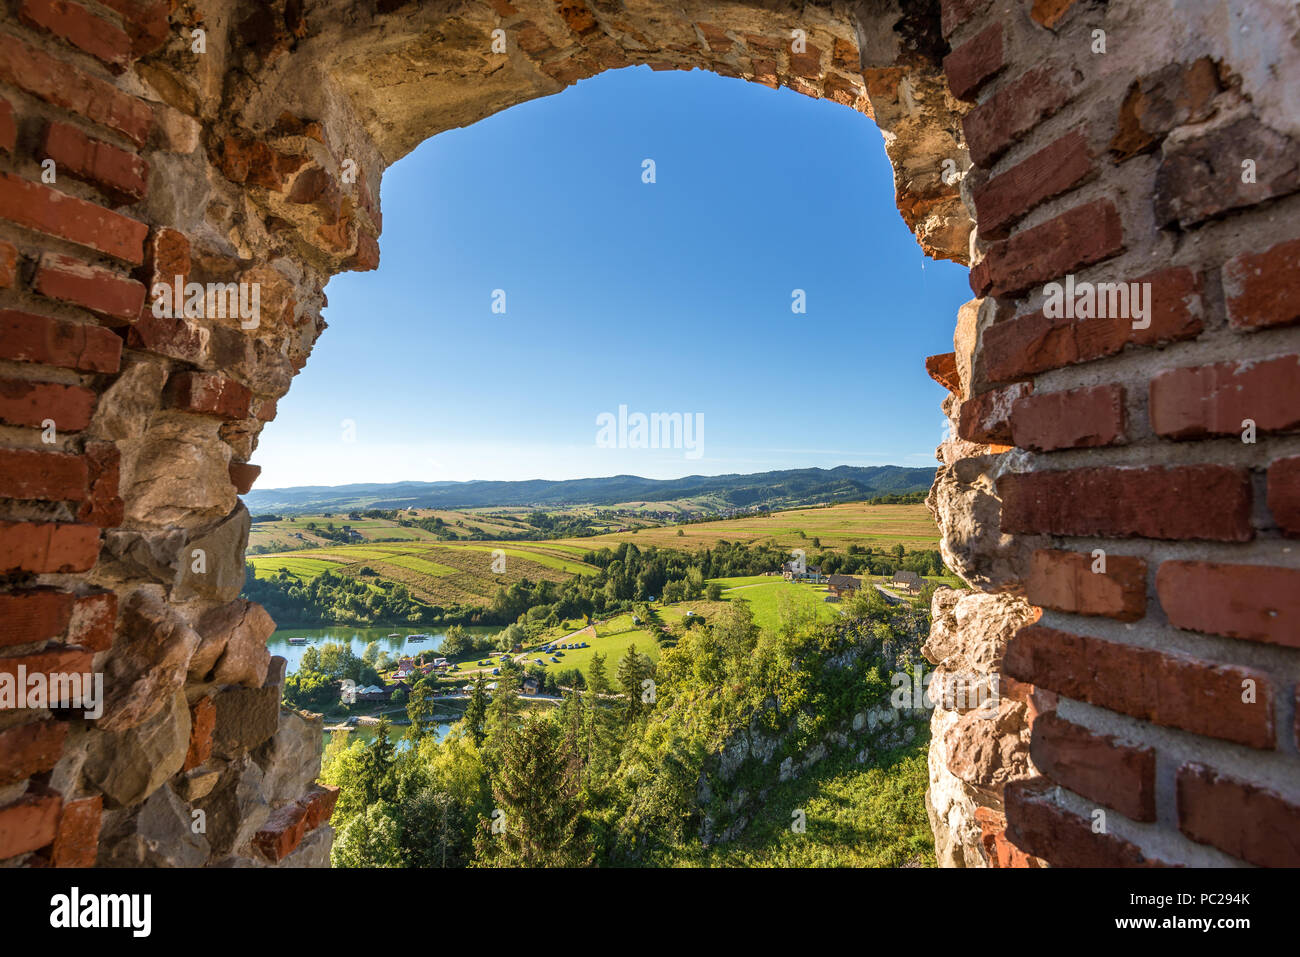 Paysage rural pittoresque vu à travers les ruines du château de Czorsztyn. Pologne Banque D'Images